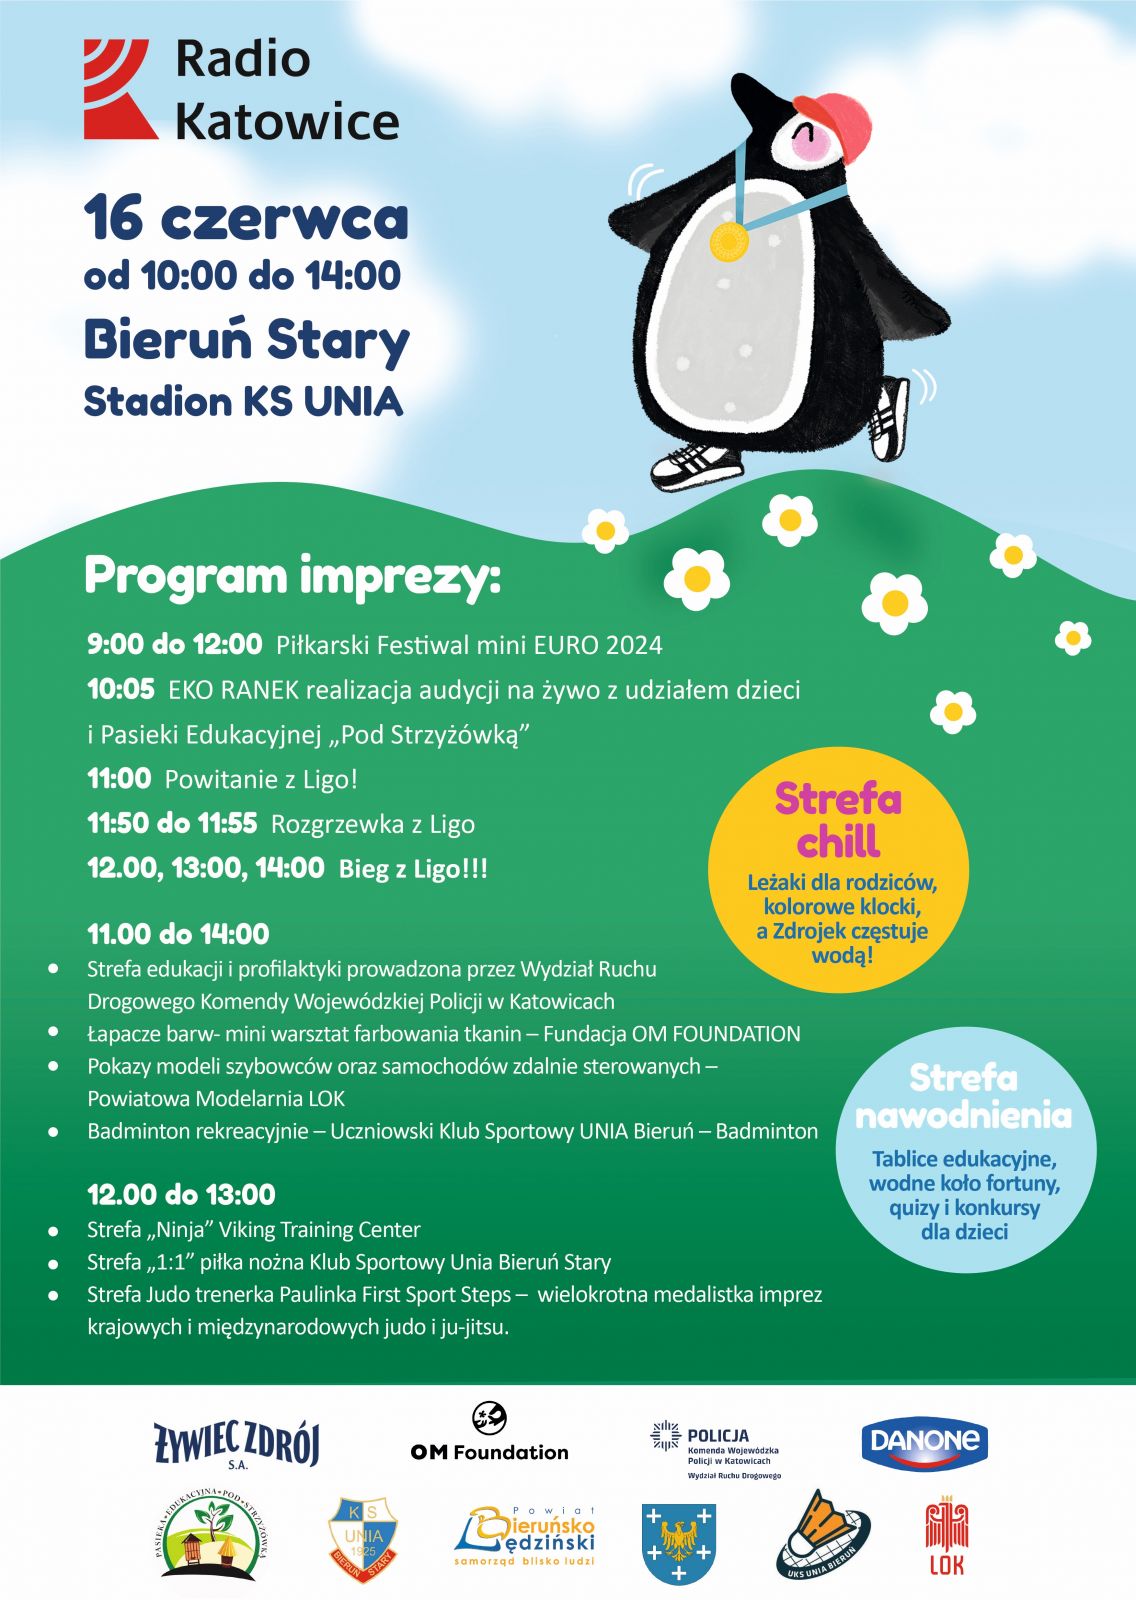 Plakat informacyjny z pingwinkiem spacerującym po zielonej łące